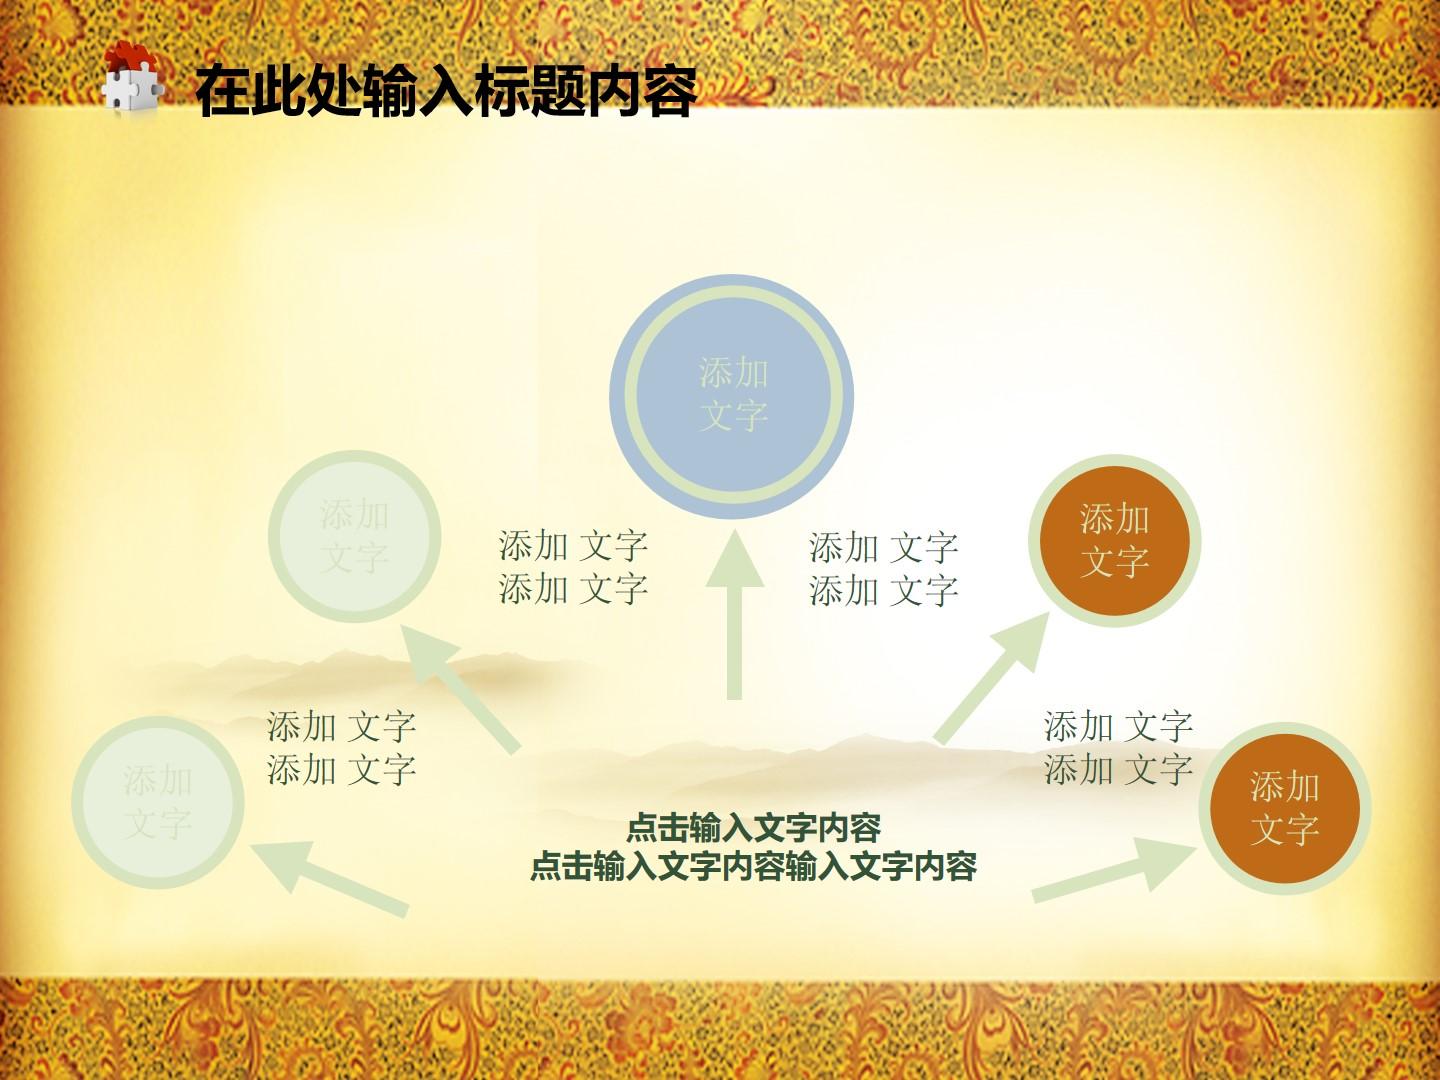 教育教学橙色黄色白色中国风突出实景云素材PPT模板1672494418517